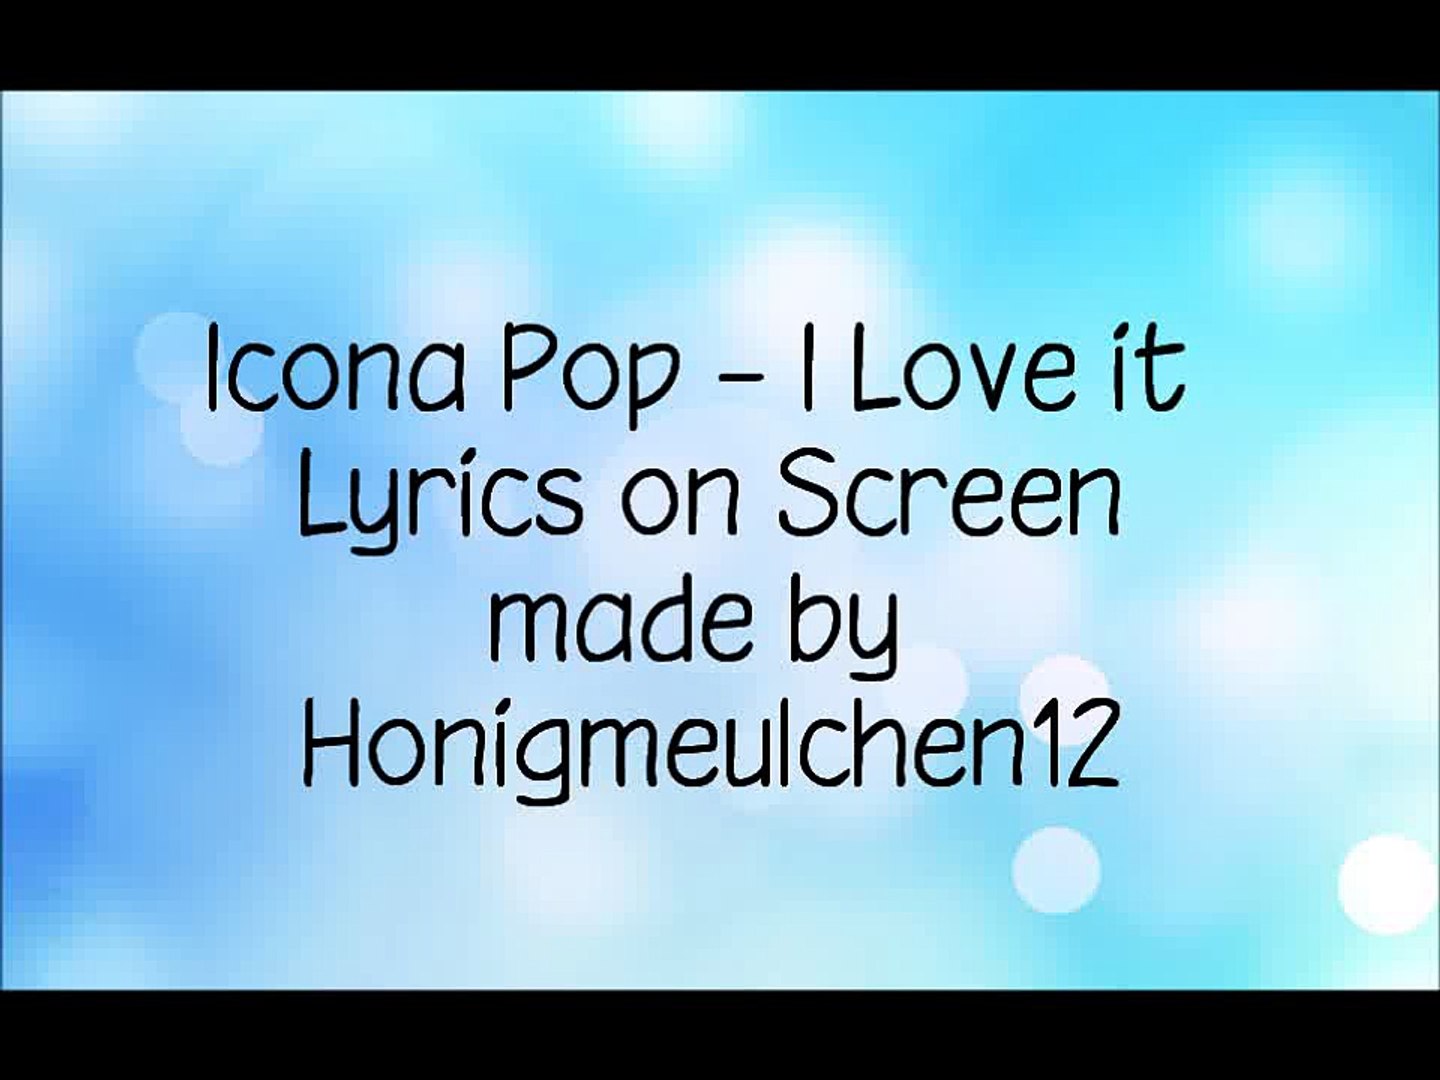 I love it icona текст. Песня i Love it icona Pop текст. Icona Pop i Love it.